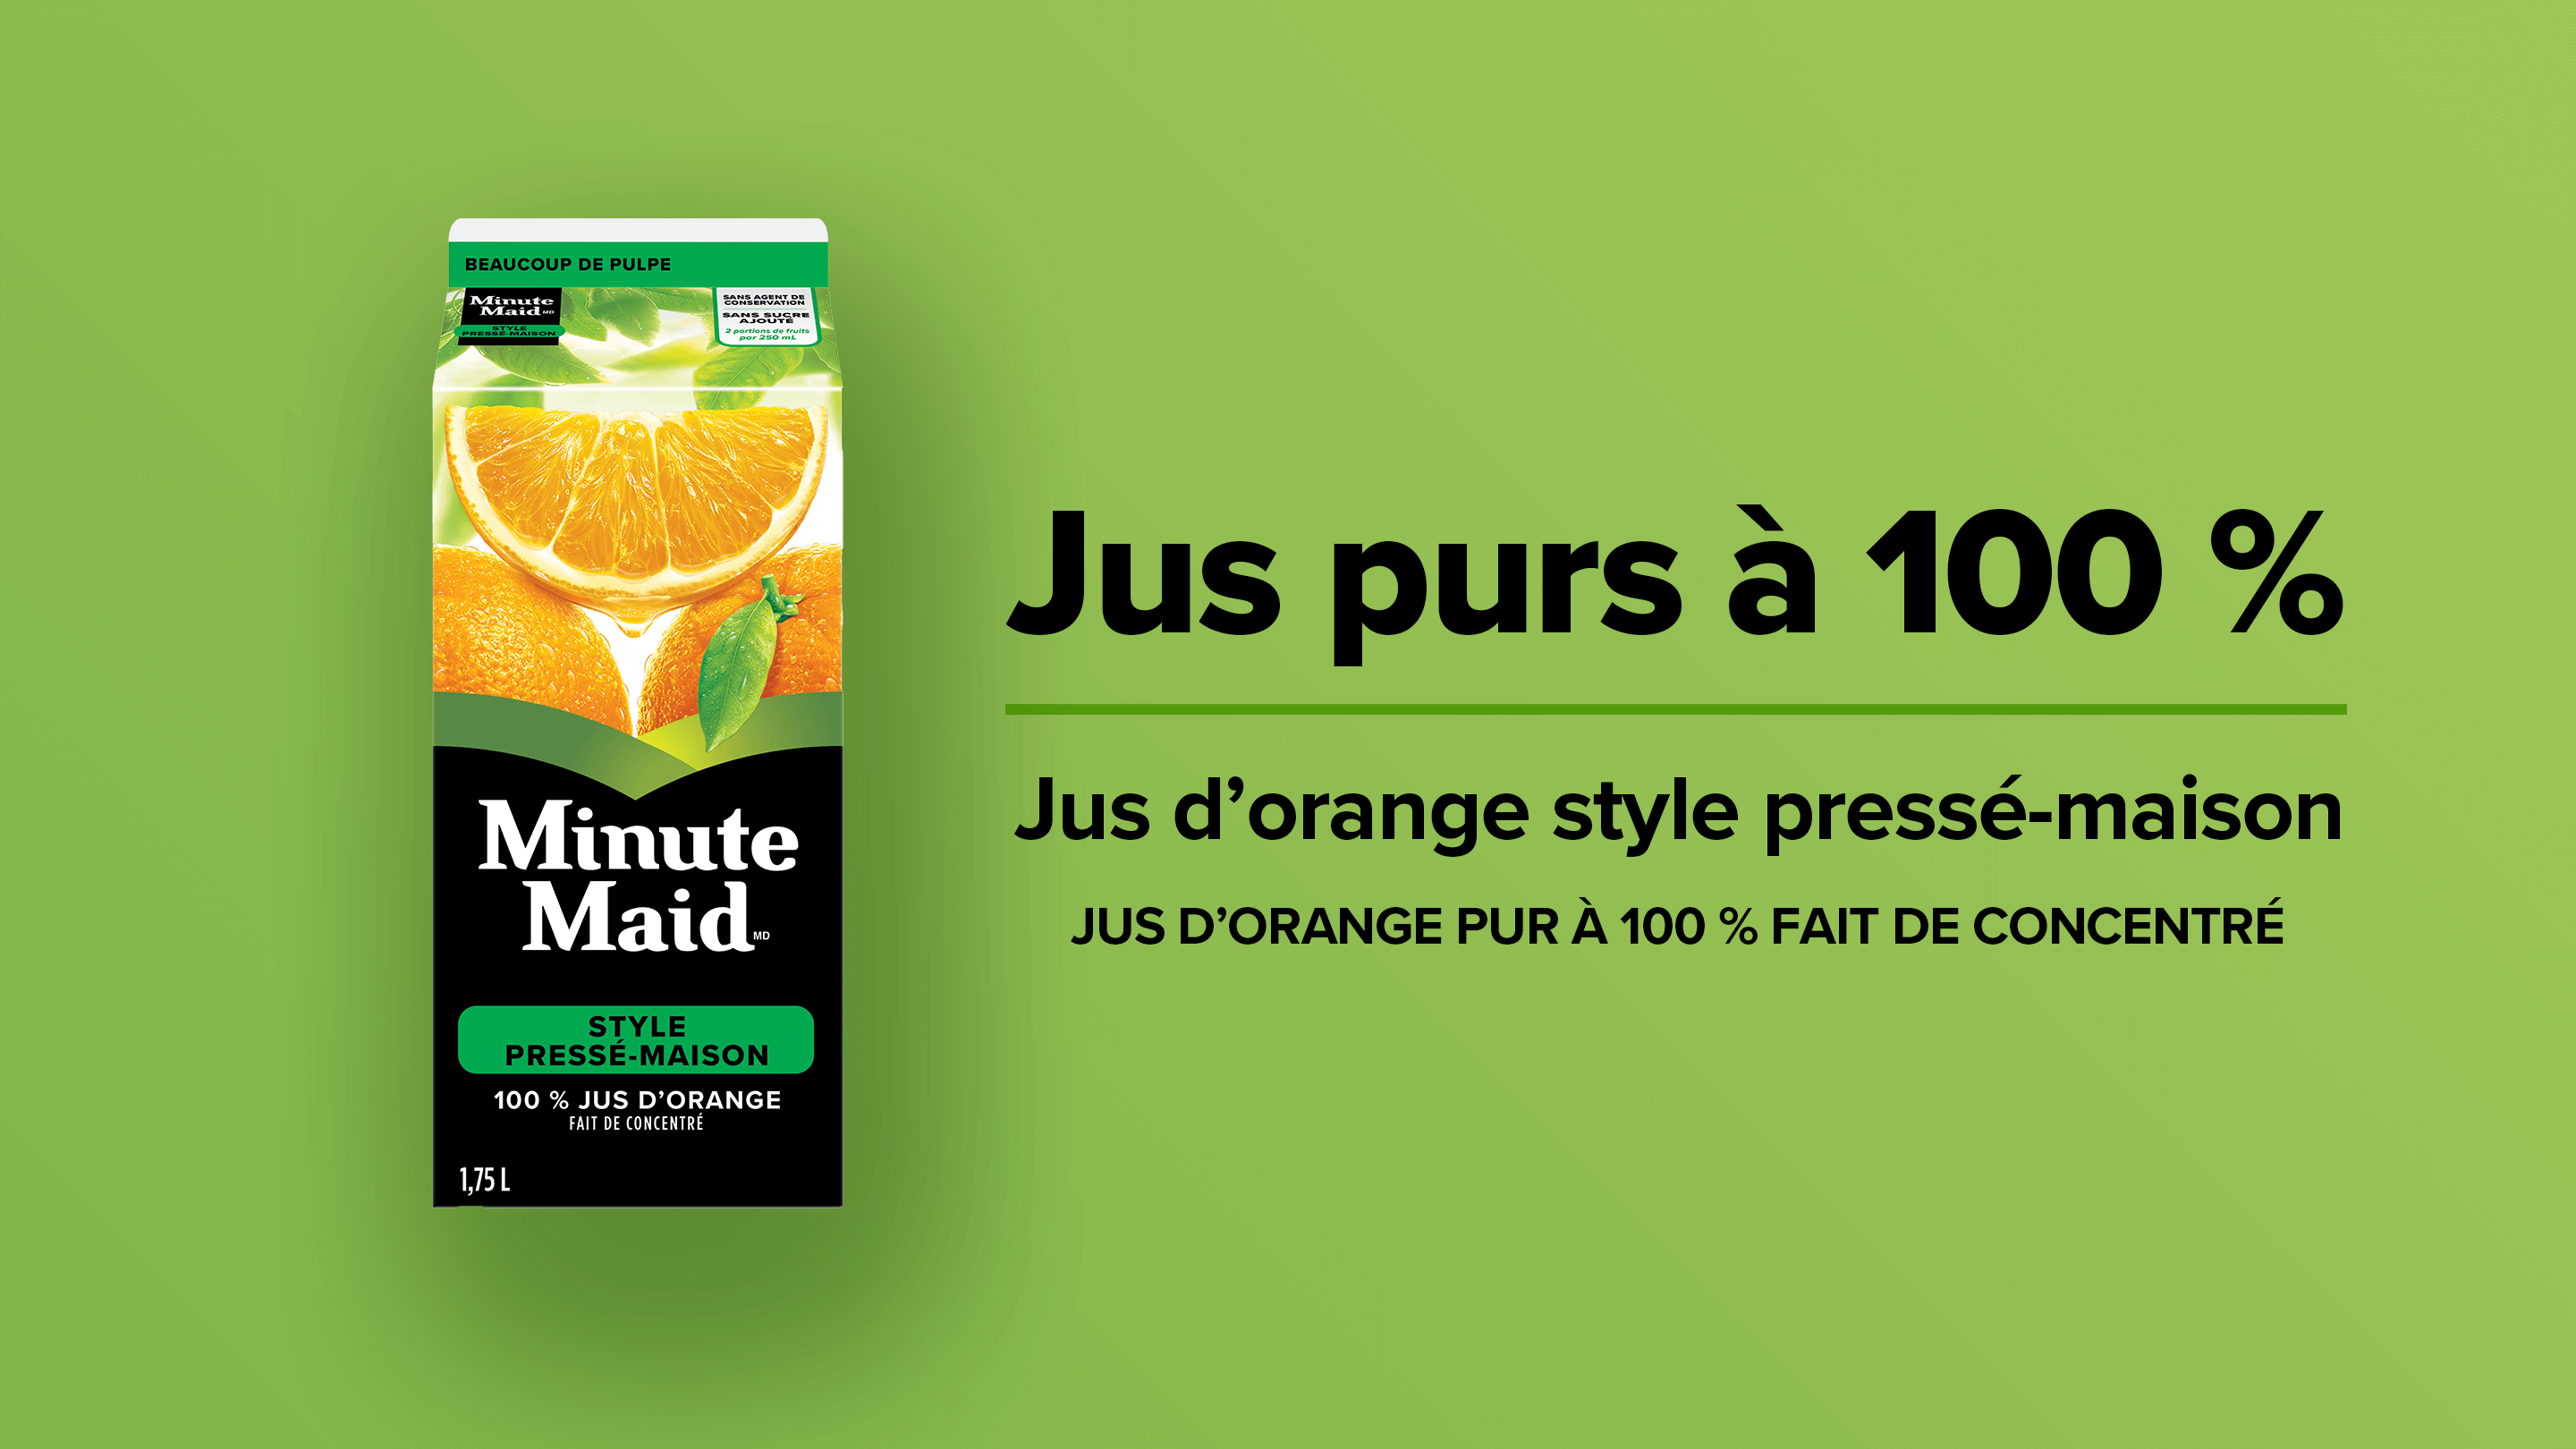 Minute Maid Jus purs à 100 %. Jus d'orange style pressé-maison. Jus d'orange pur à 100 % fait de concentré.